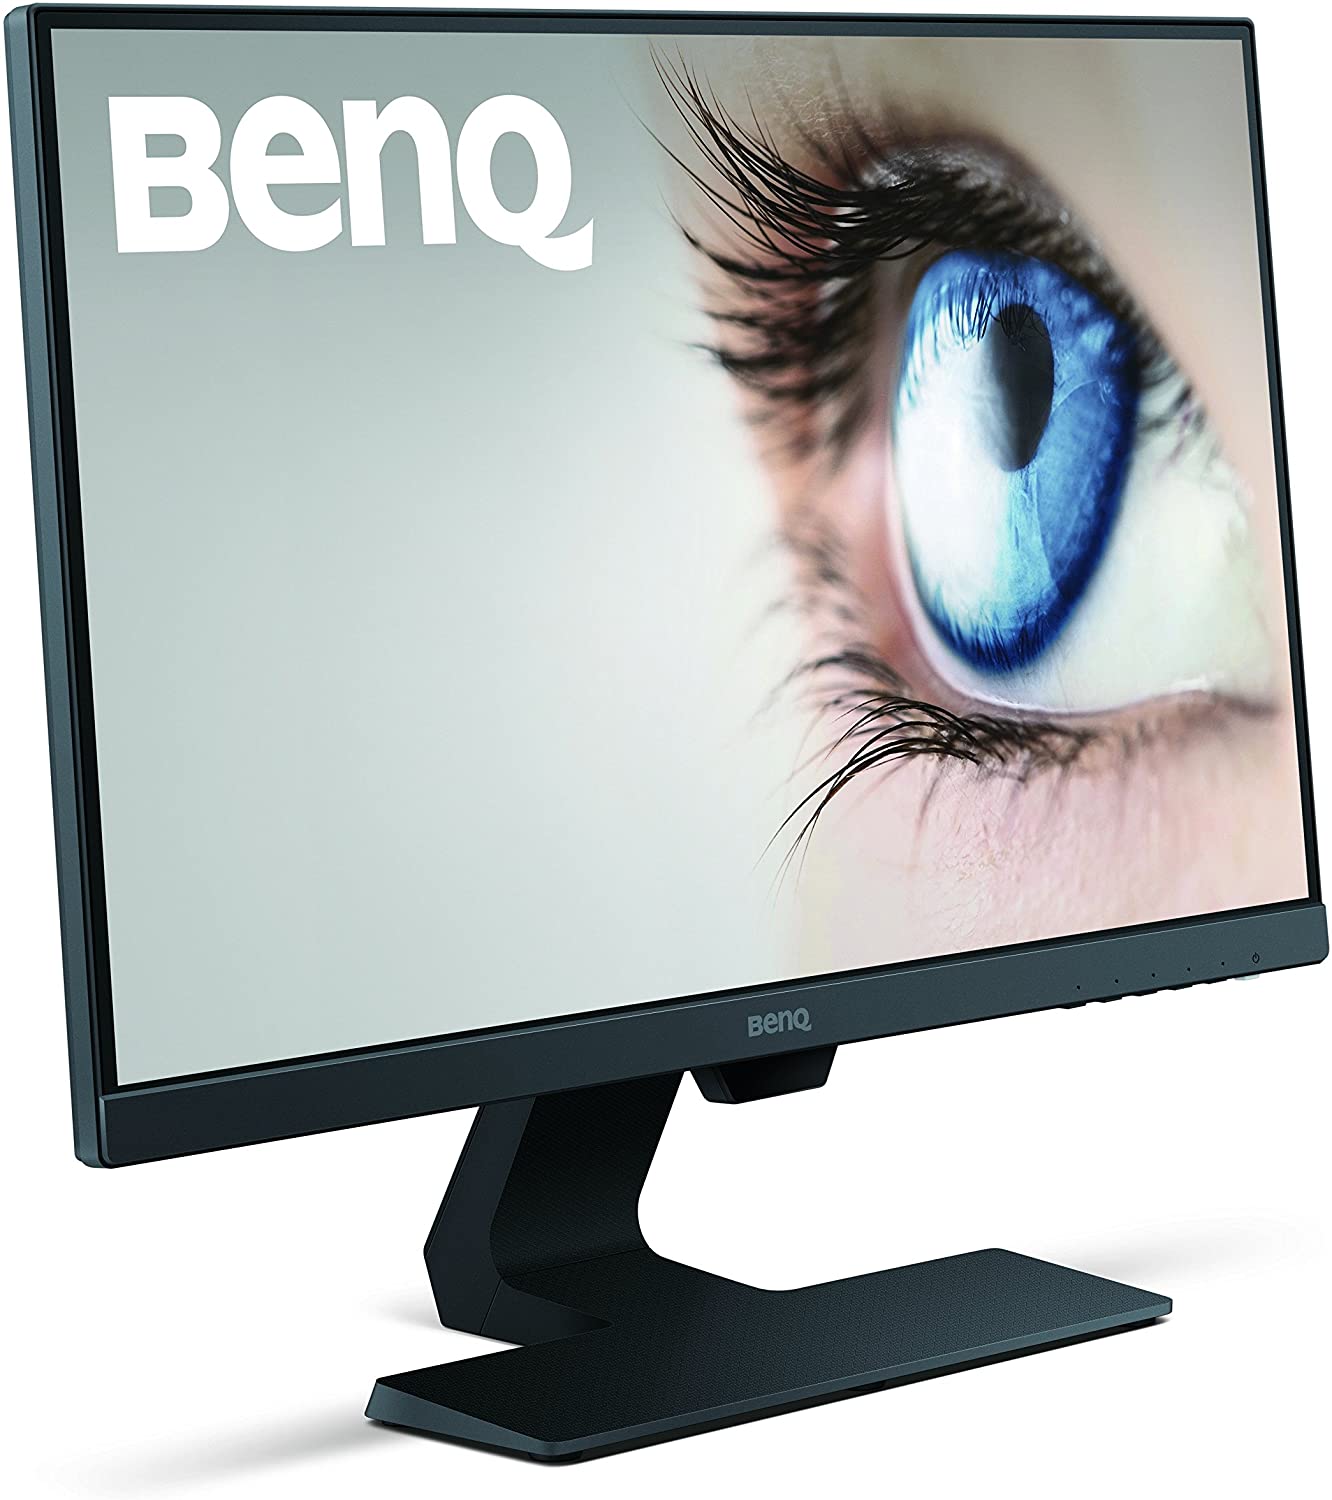 BenQ 24 Inch IPS Monitor